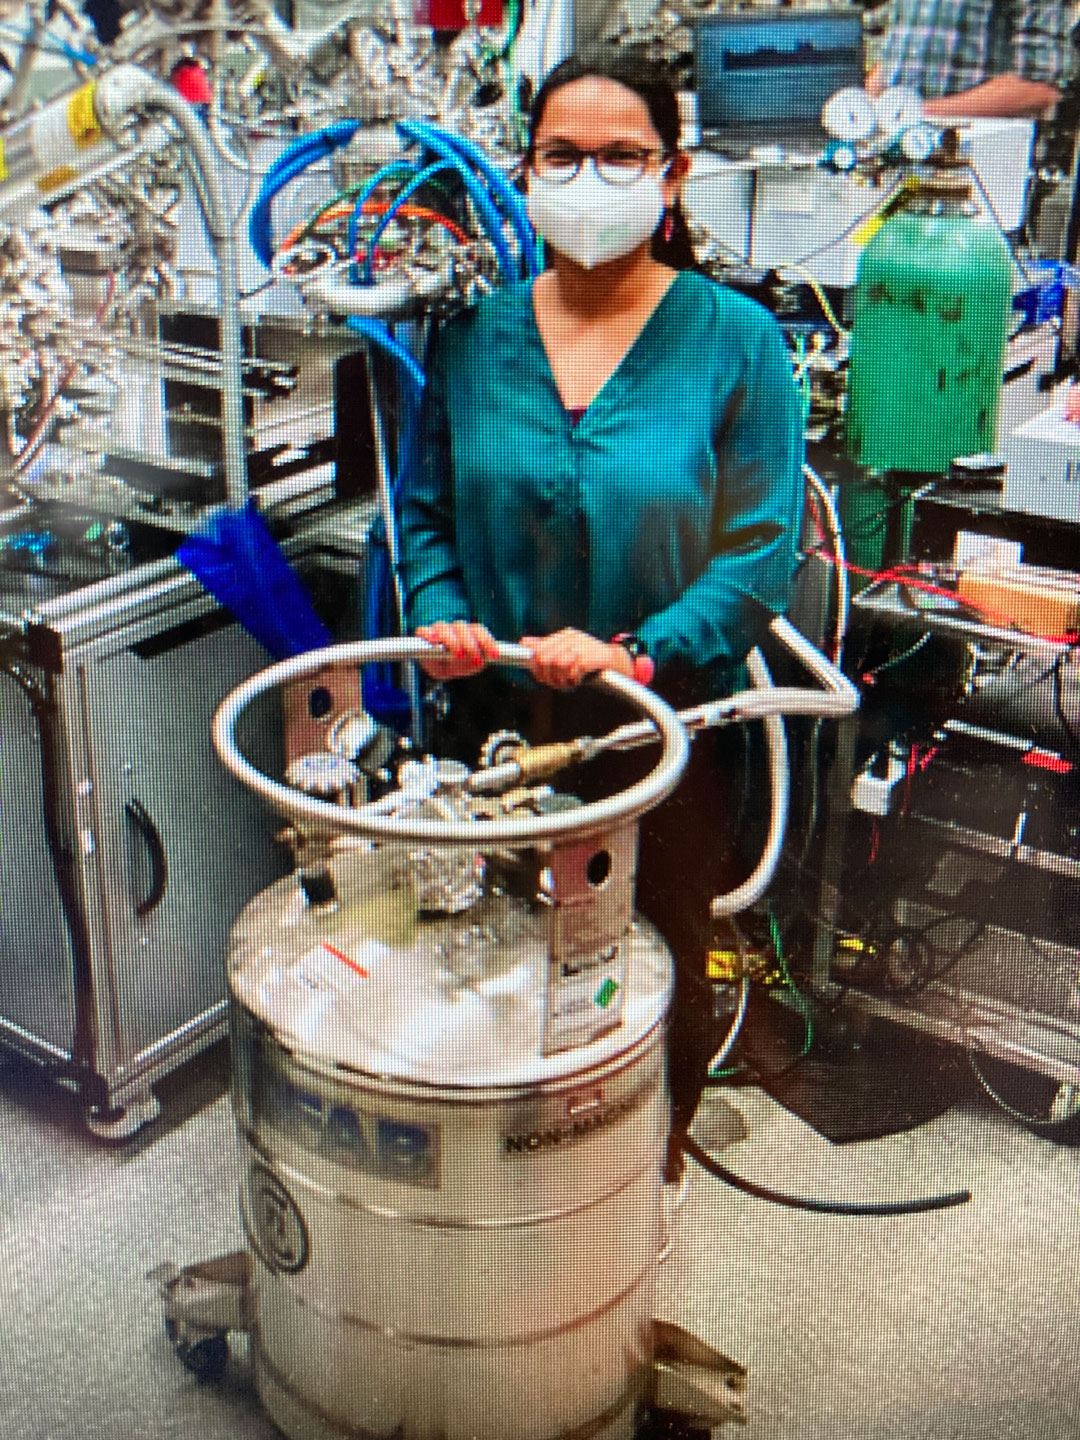 cryogenic laboratory equipment